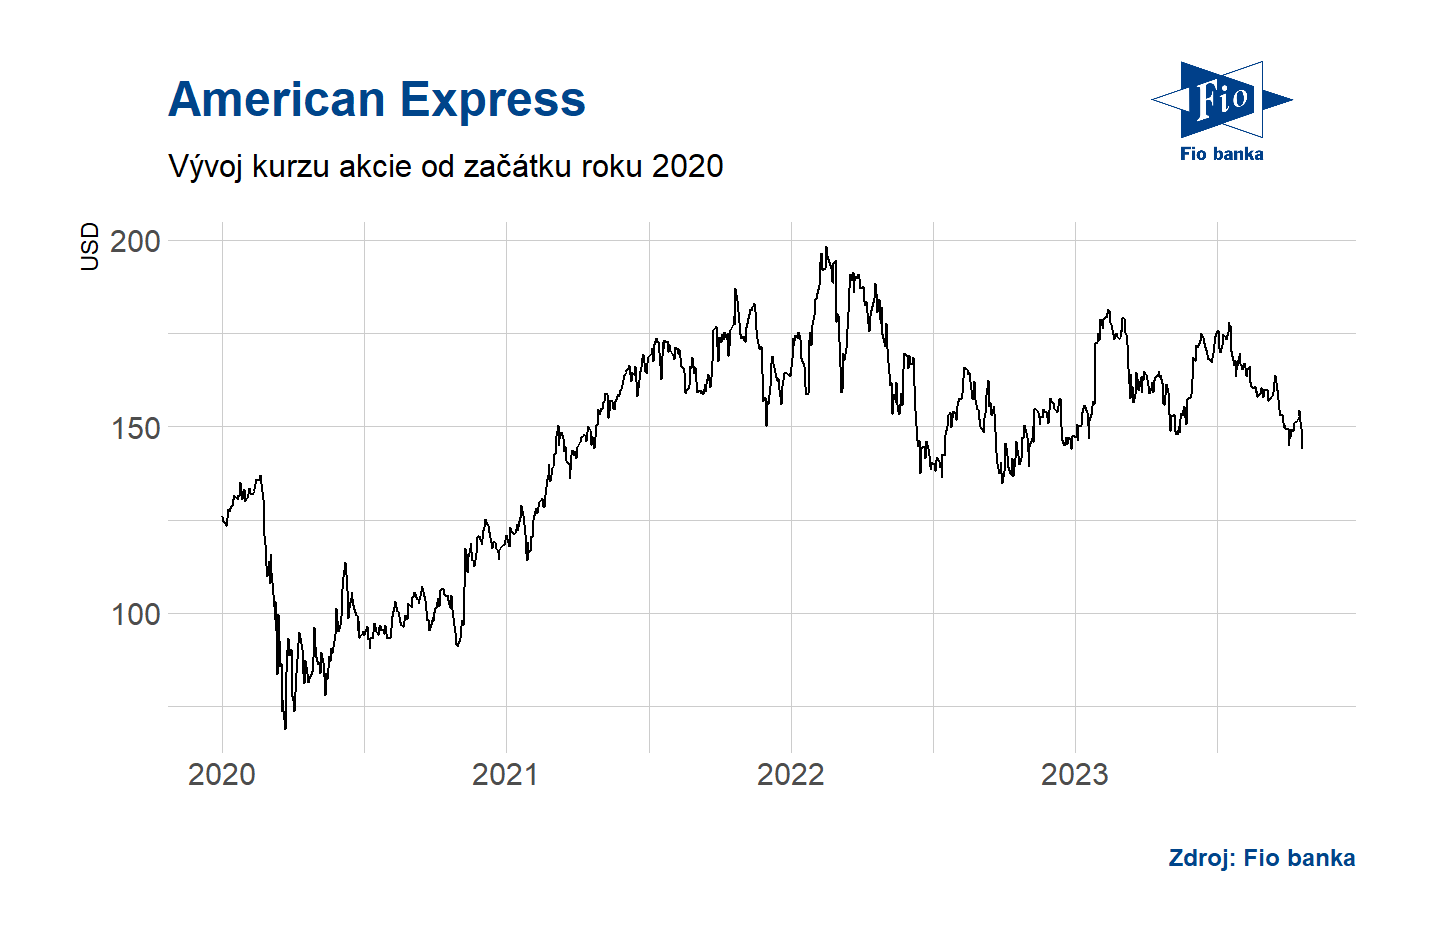 Vývoj akcií American Express